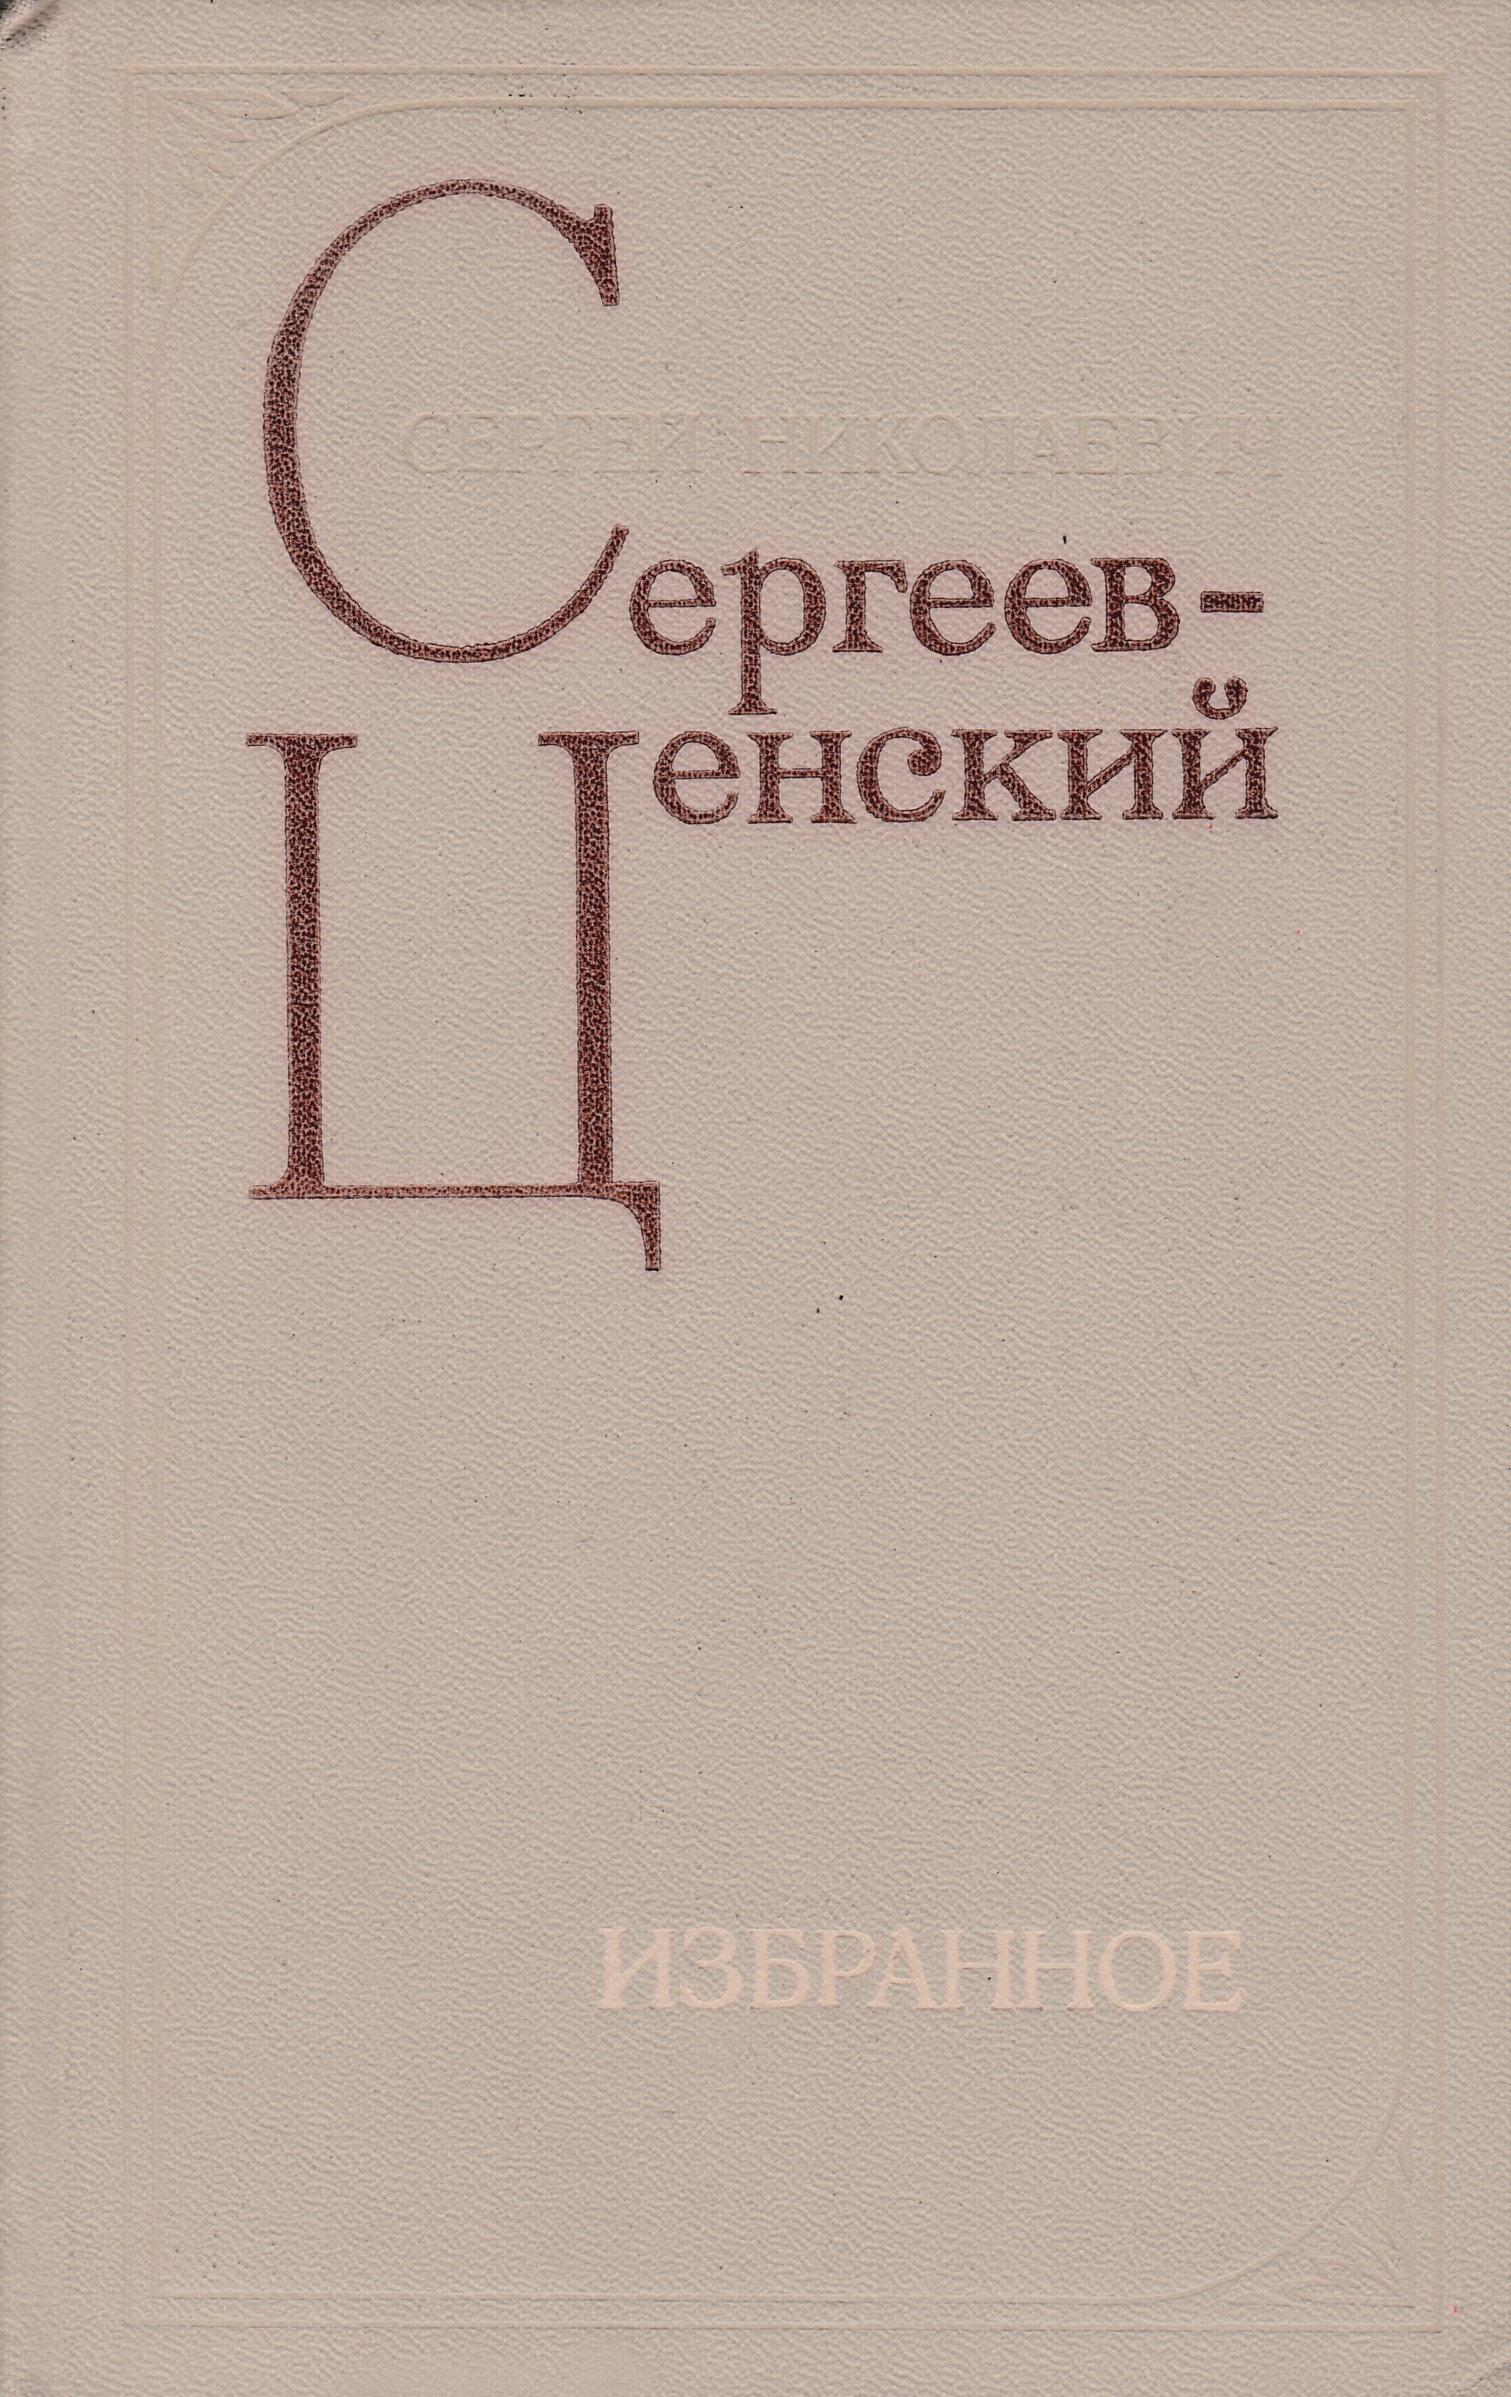 Сергеев б н. Сергеев-Ценский, с. избранное 1936. С Н Сергеев-Ценский книги. Сергеев н.к.